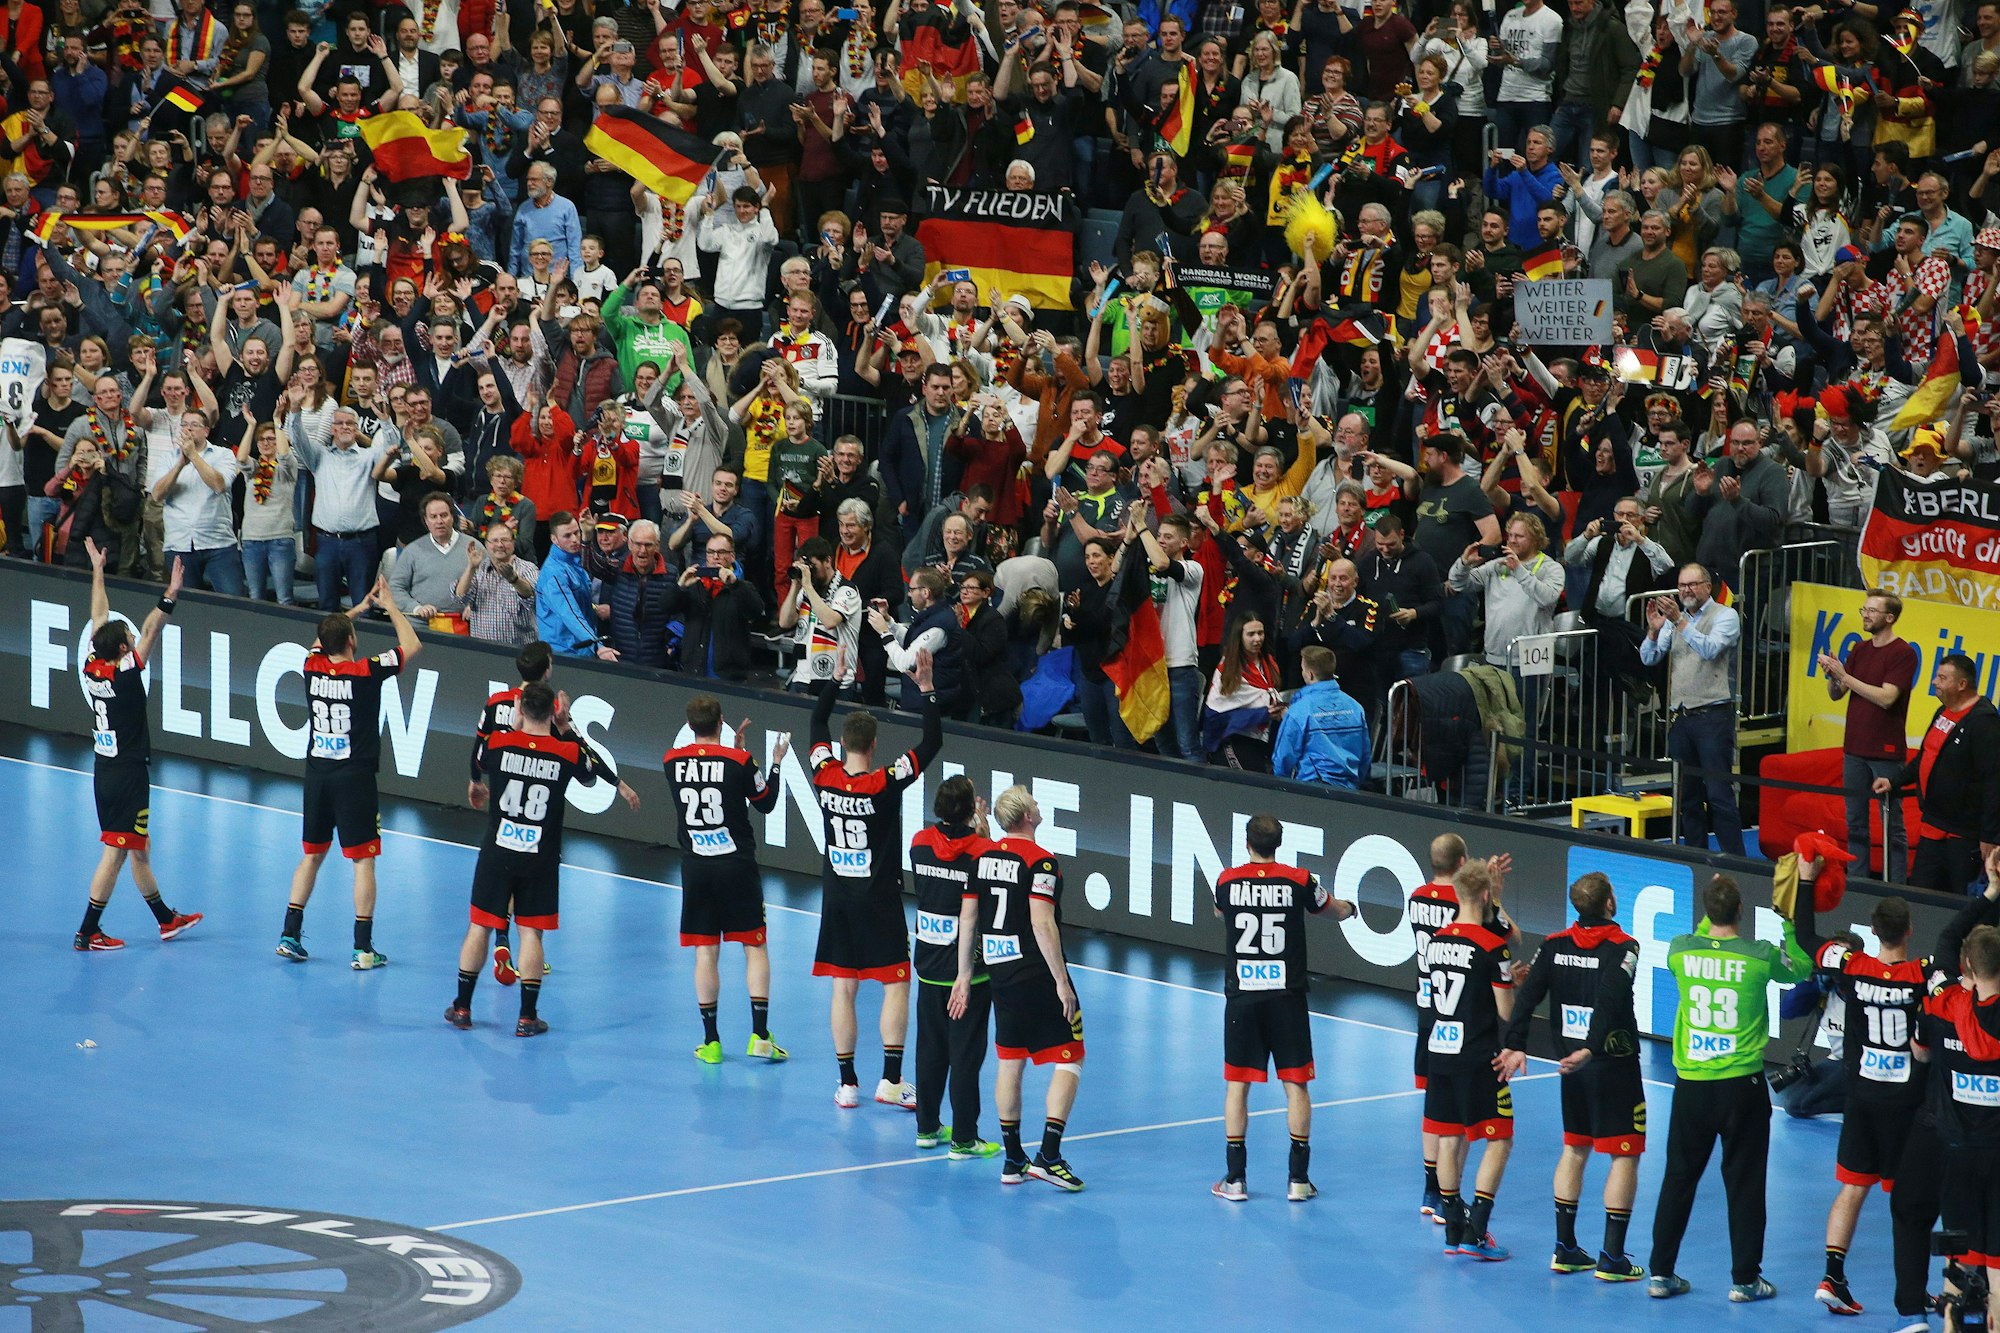 Bei der Handball WM 2019 jubelten die deutschen Fans ihren Siegern zu. Auch dieses Jahrfindet die Haupt- und Finalrunde in der Lanxess-Arena statt.